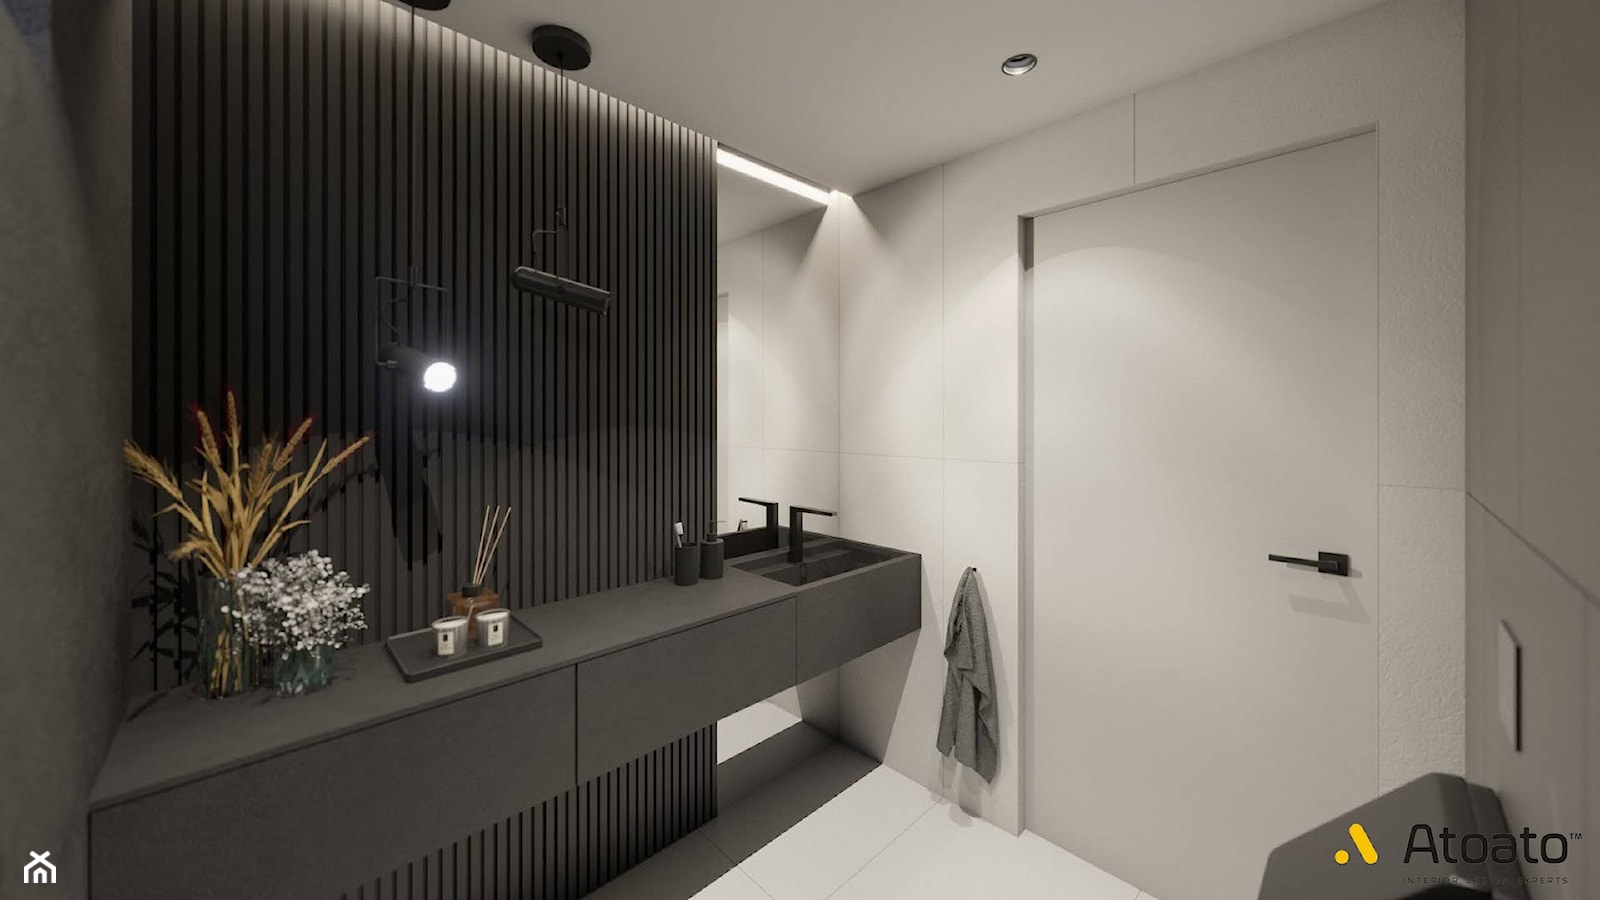 Łazienka z czarną umywalką - zdjęcie od Studio Projektowe Atoato - Homebook